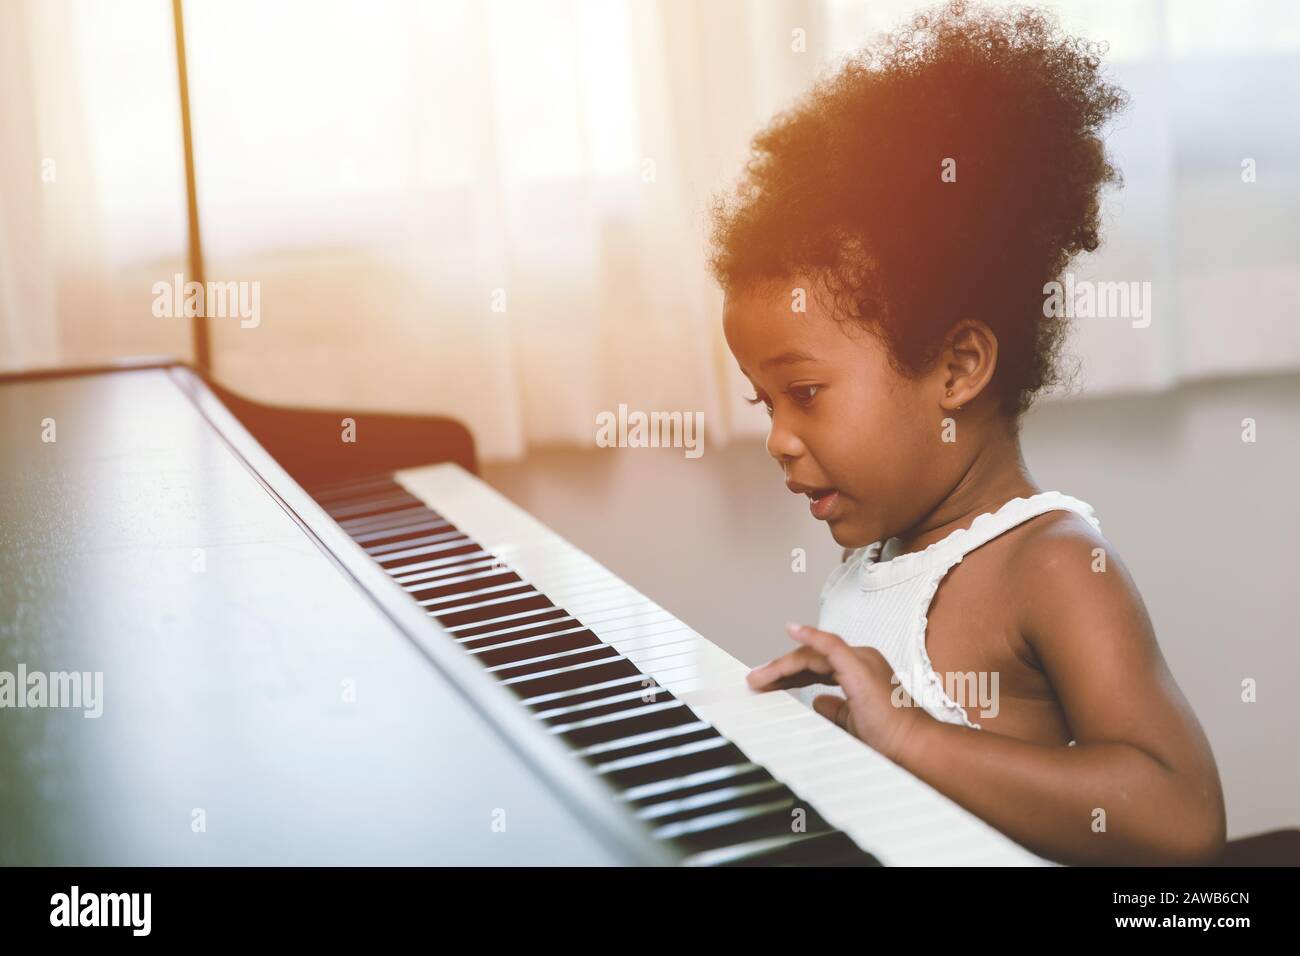 Enfant De 2 Ans De Musique De écoute Photo stock - Image du